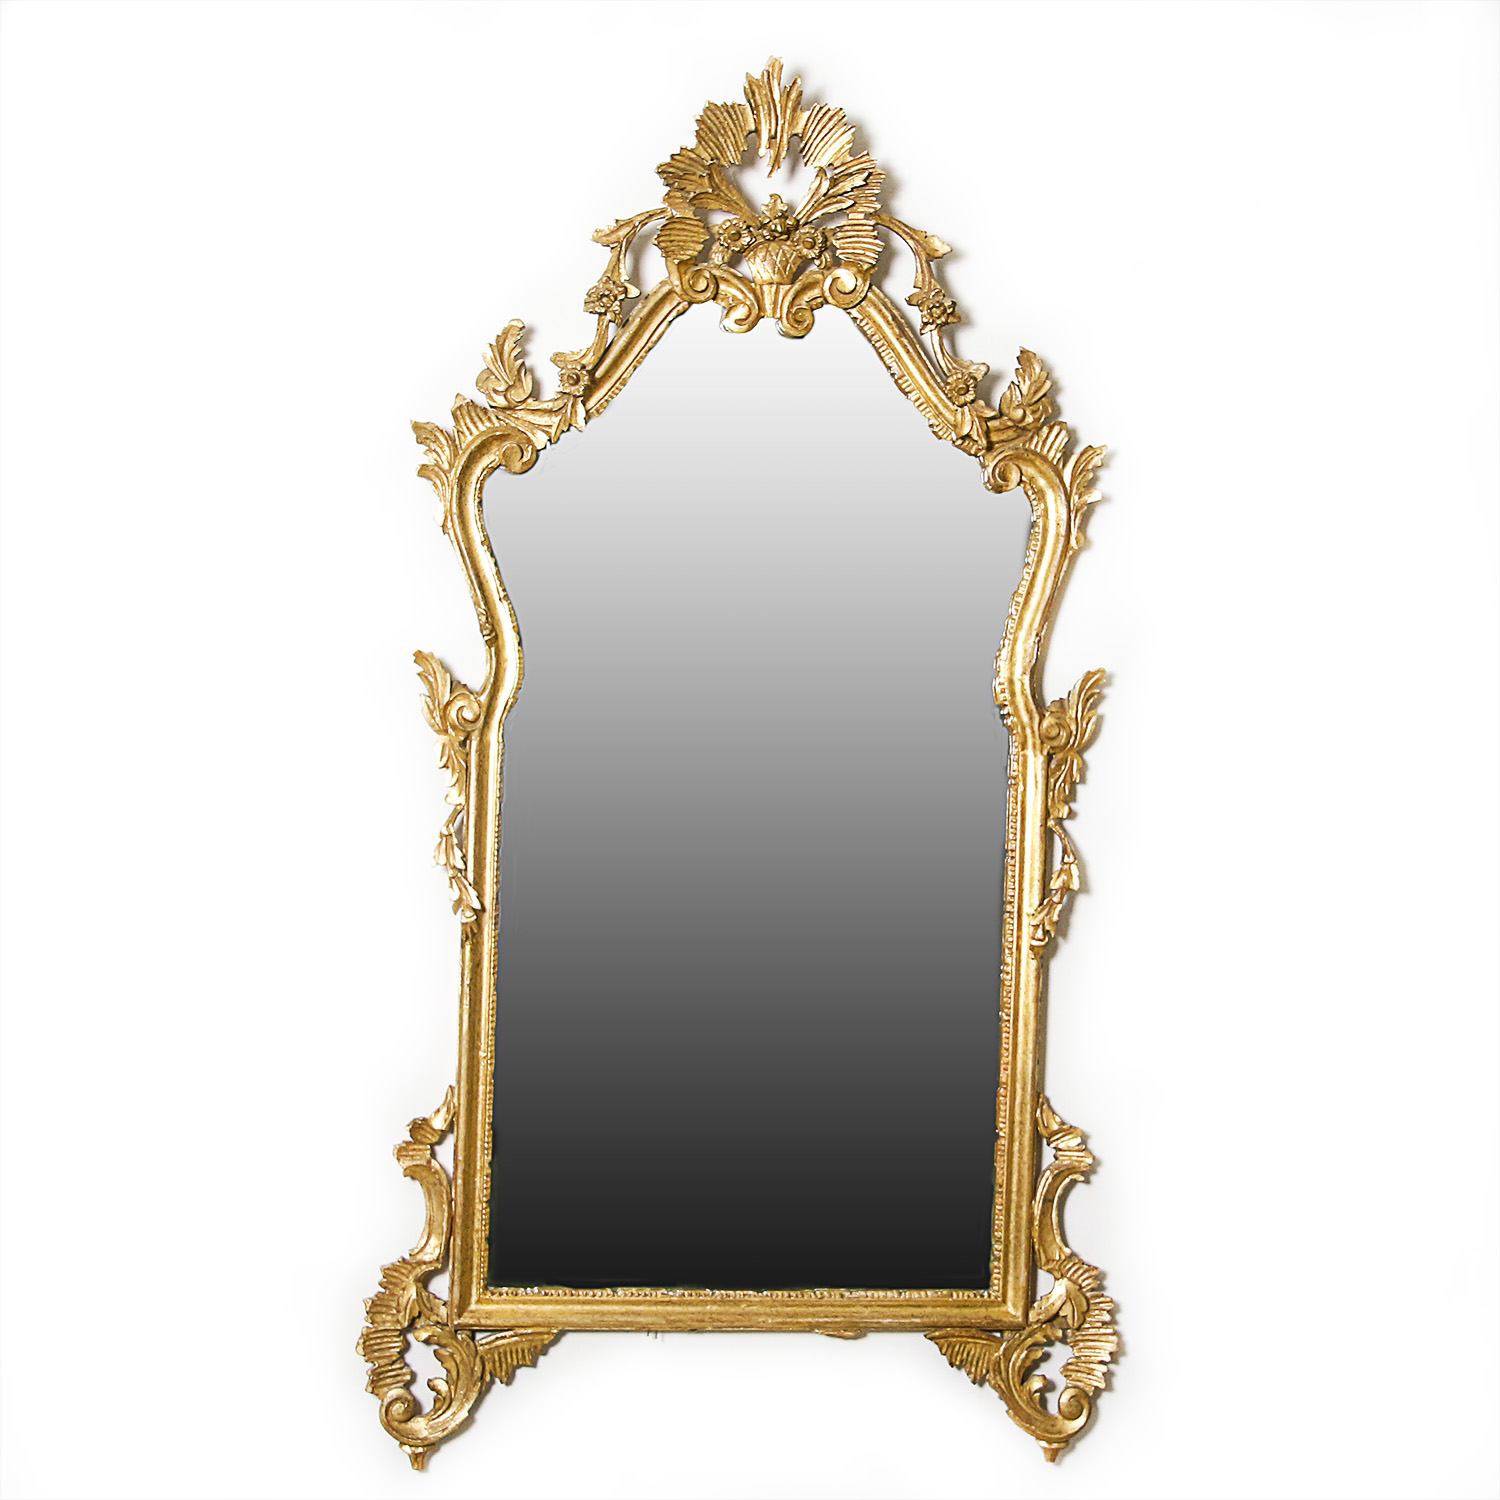 Vintage Rococo Style Wall Mirror : EBTH